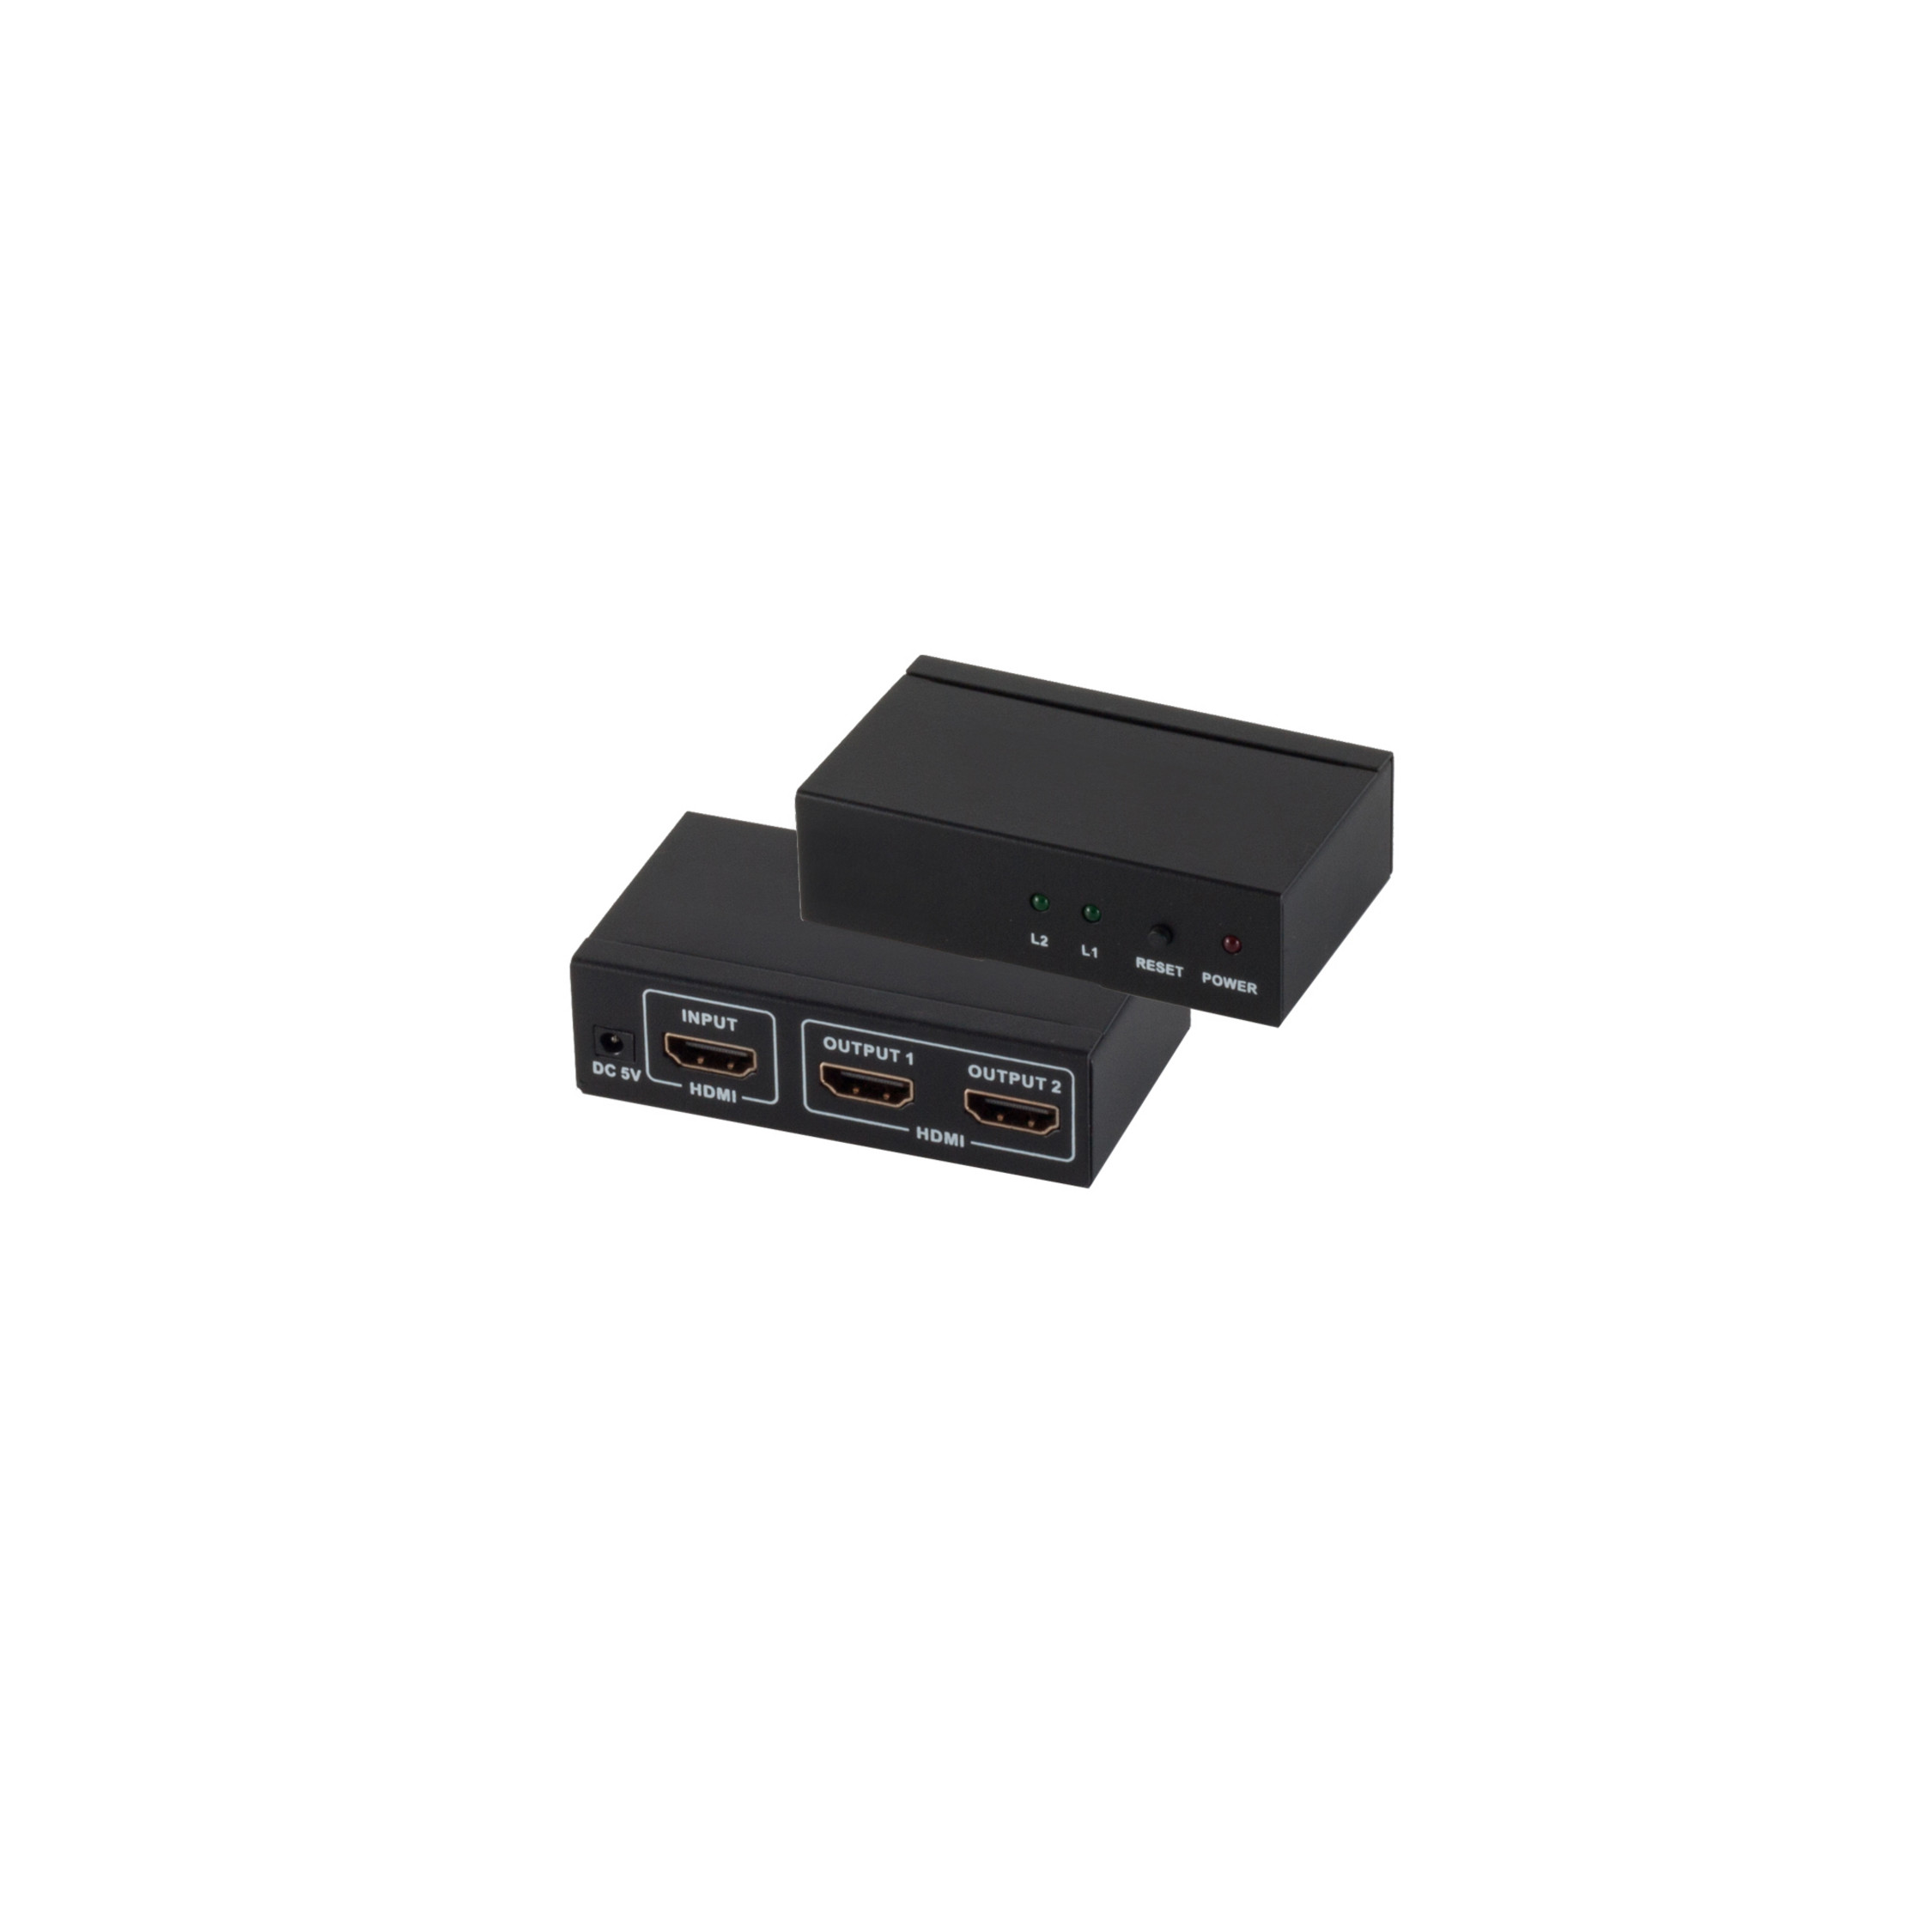 S/CONN MAXIMUM CONNECTIVITY HDMI-Verteiler, x IN 2 OUT Umschalter & 4K2K x Verteiler 1 Netzteil, 3D